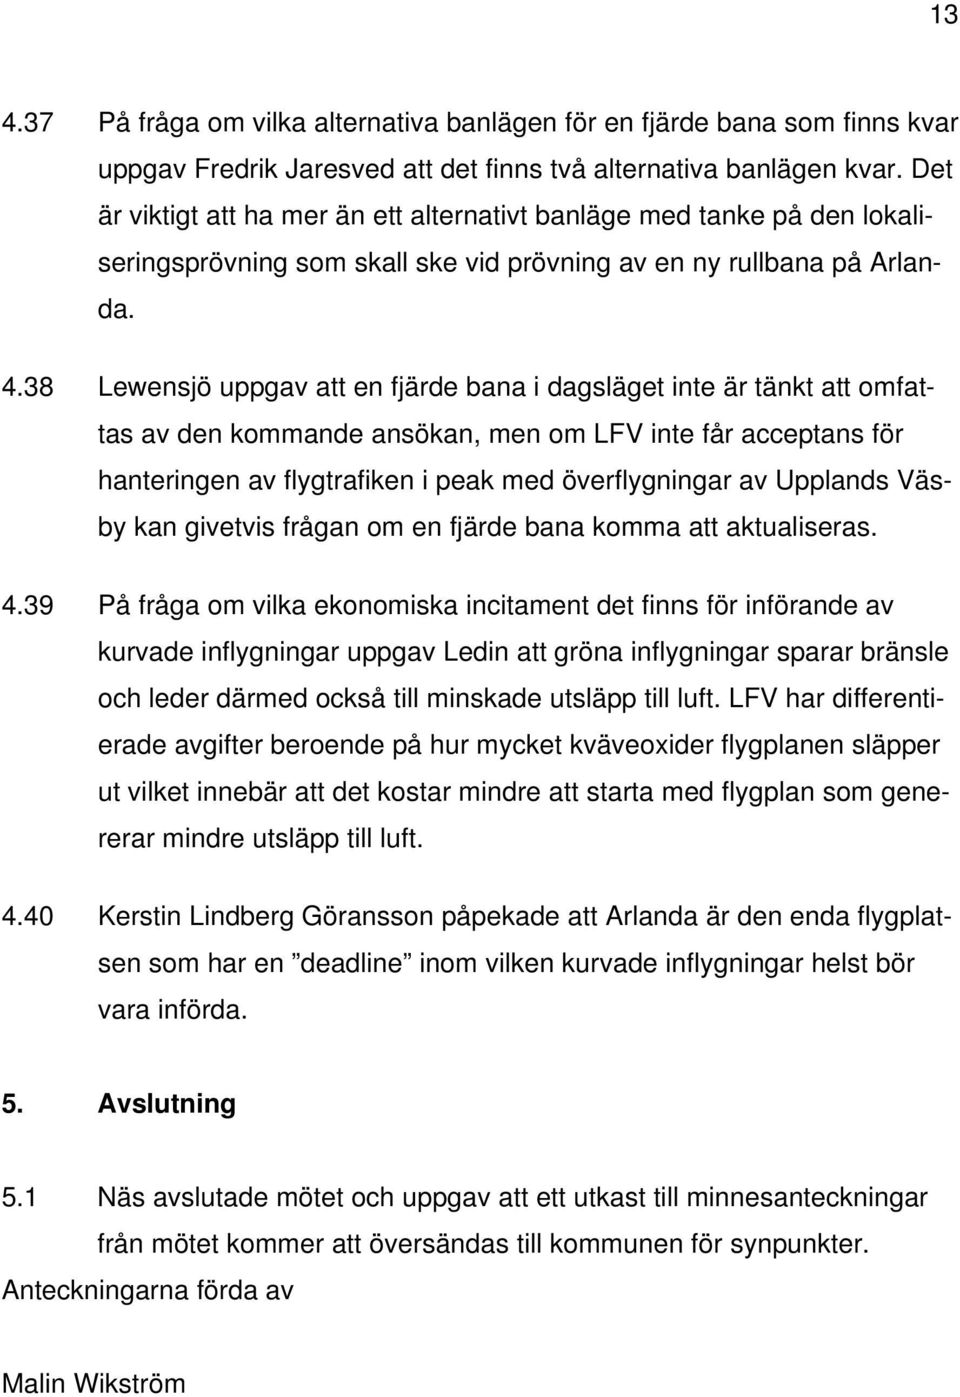 38 Lewensjö uppgav att en fjärde bana i dagsläget inte är tänkt att omfattas av den kommande ansökan, men om LFV inte får acceptans för hanteringen av flygtrafiken i peak med överflygningar av